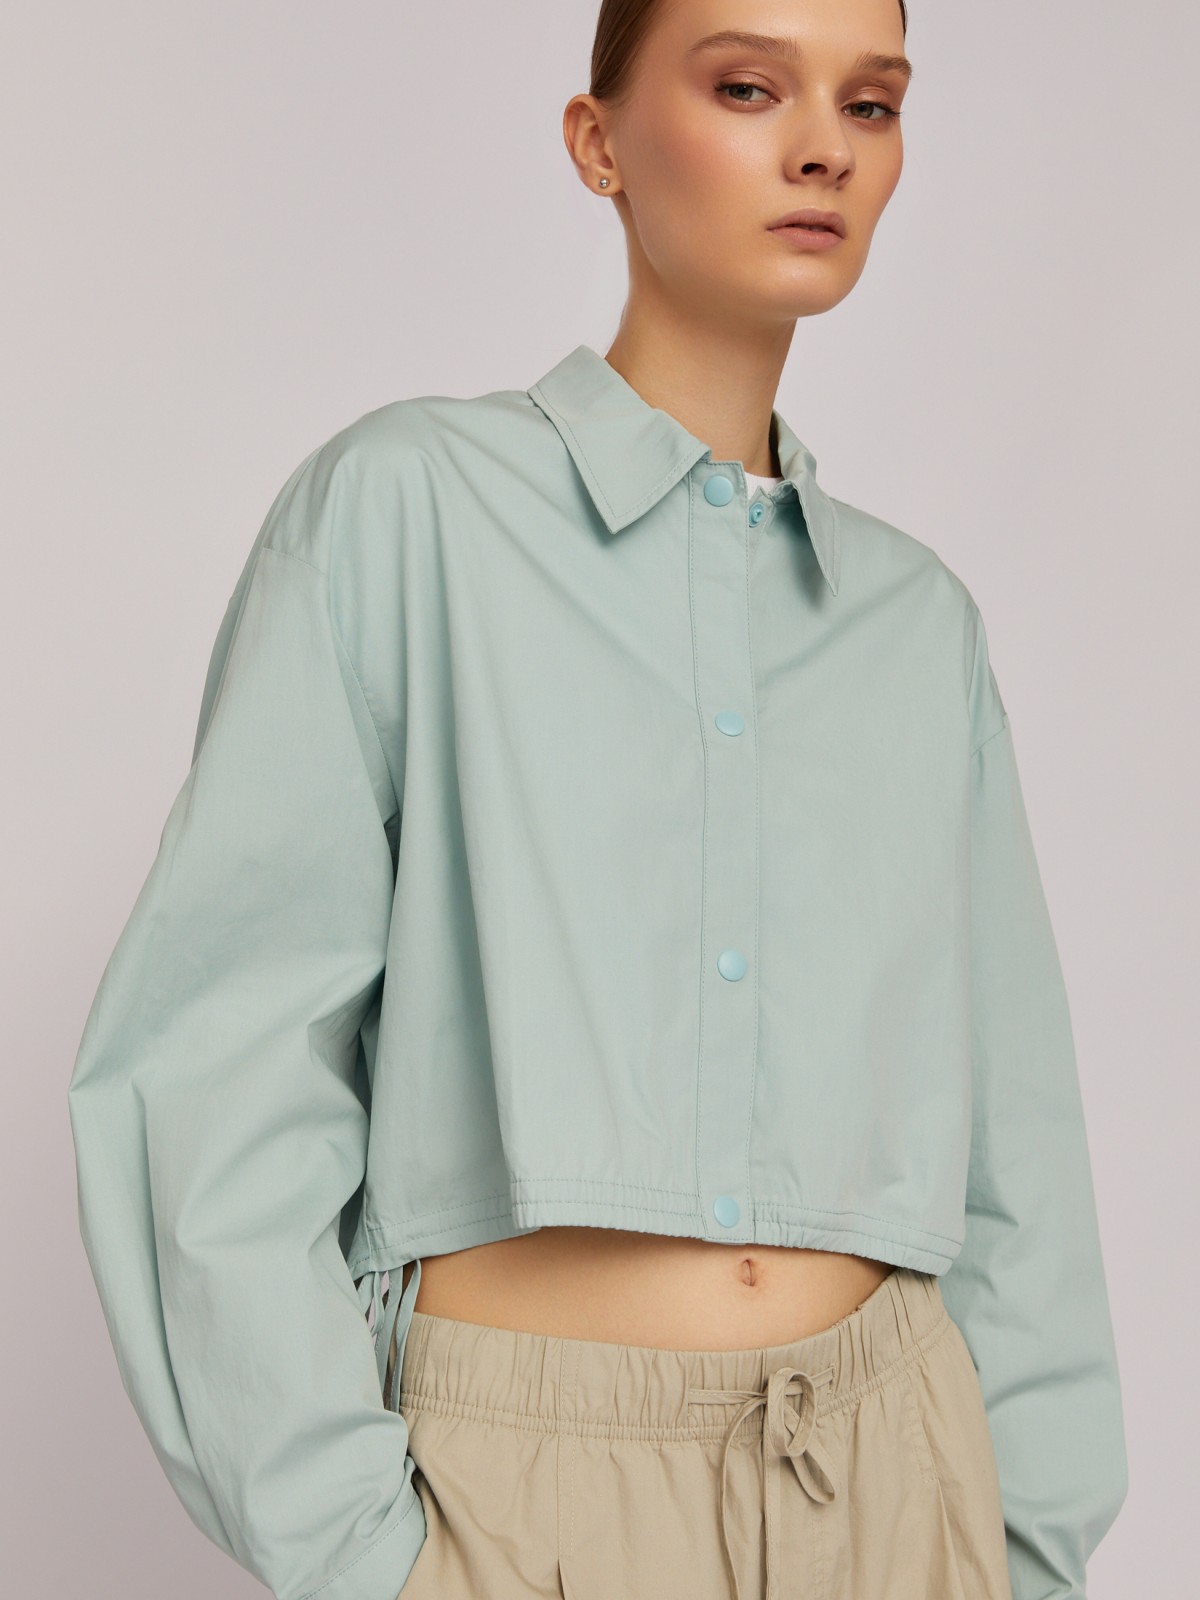 Укороченная блузка-рубашка из хлопка на кулиске zolla 02421114Y131, цвет мятный, размер XS - фото 3